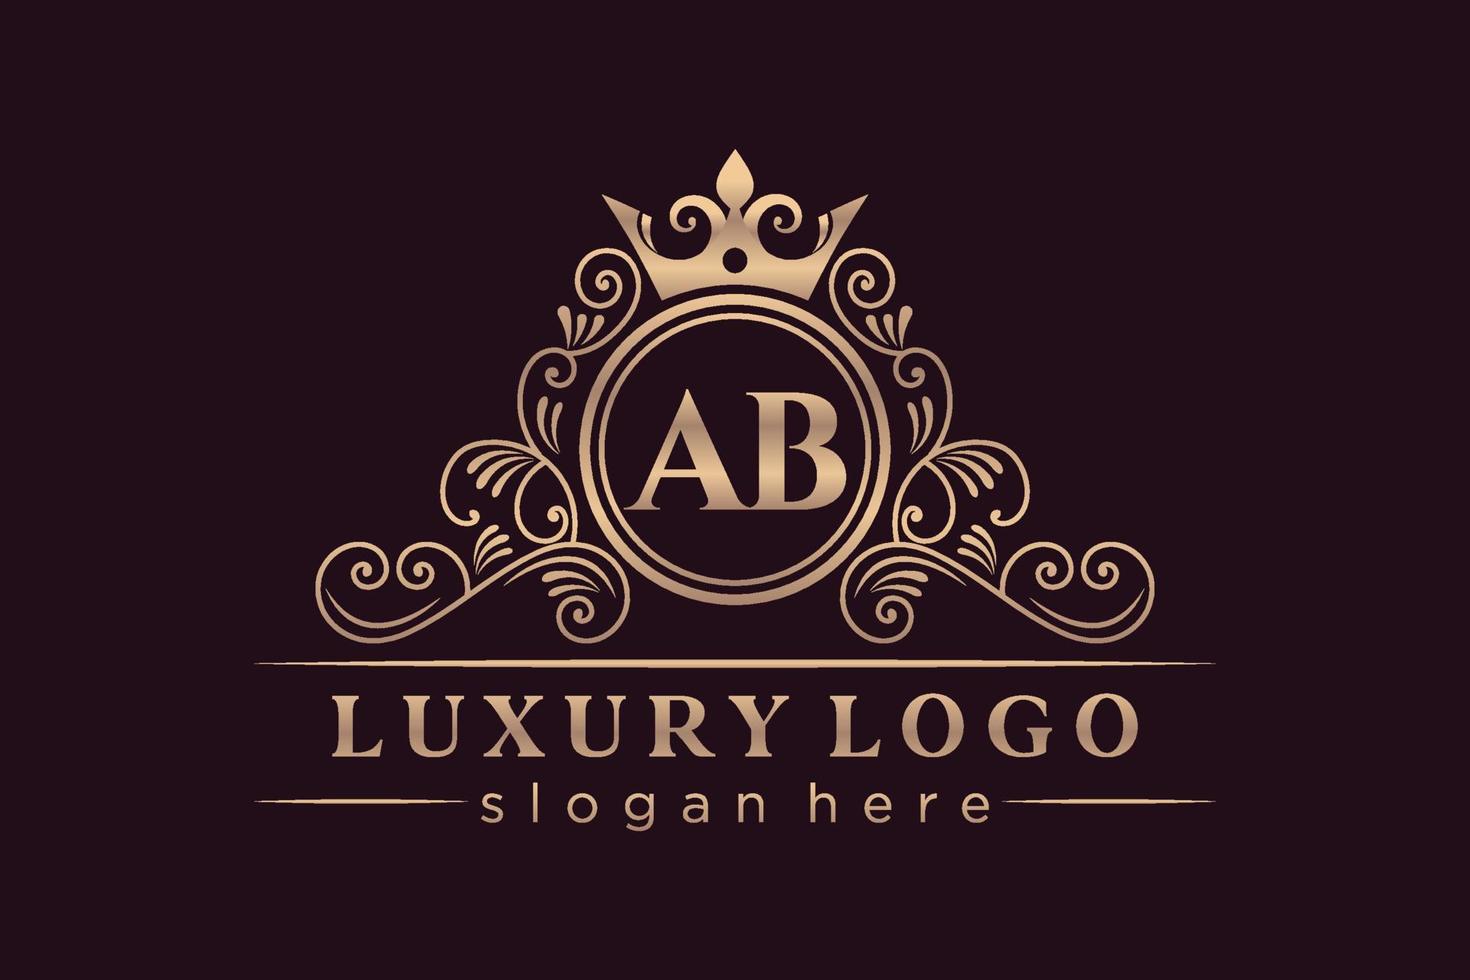 ab letra inicial ouro caligráfico feminino floral mão desenhada monograma heráldico antigo estilo vintage luxo design de logotipo vetor premium